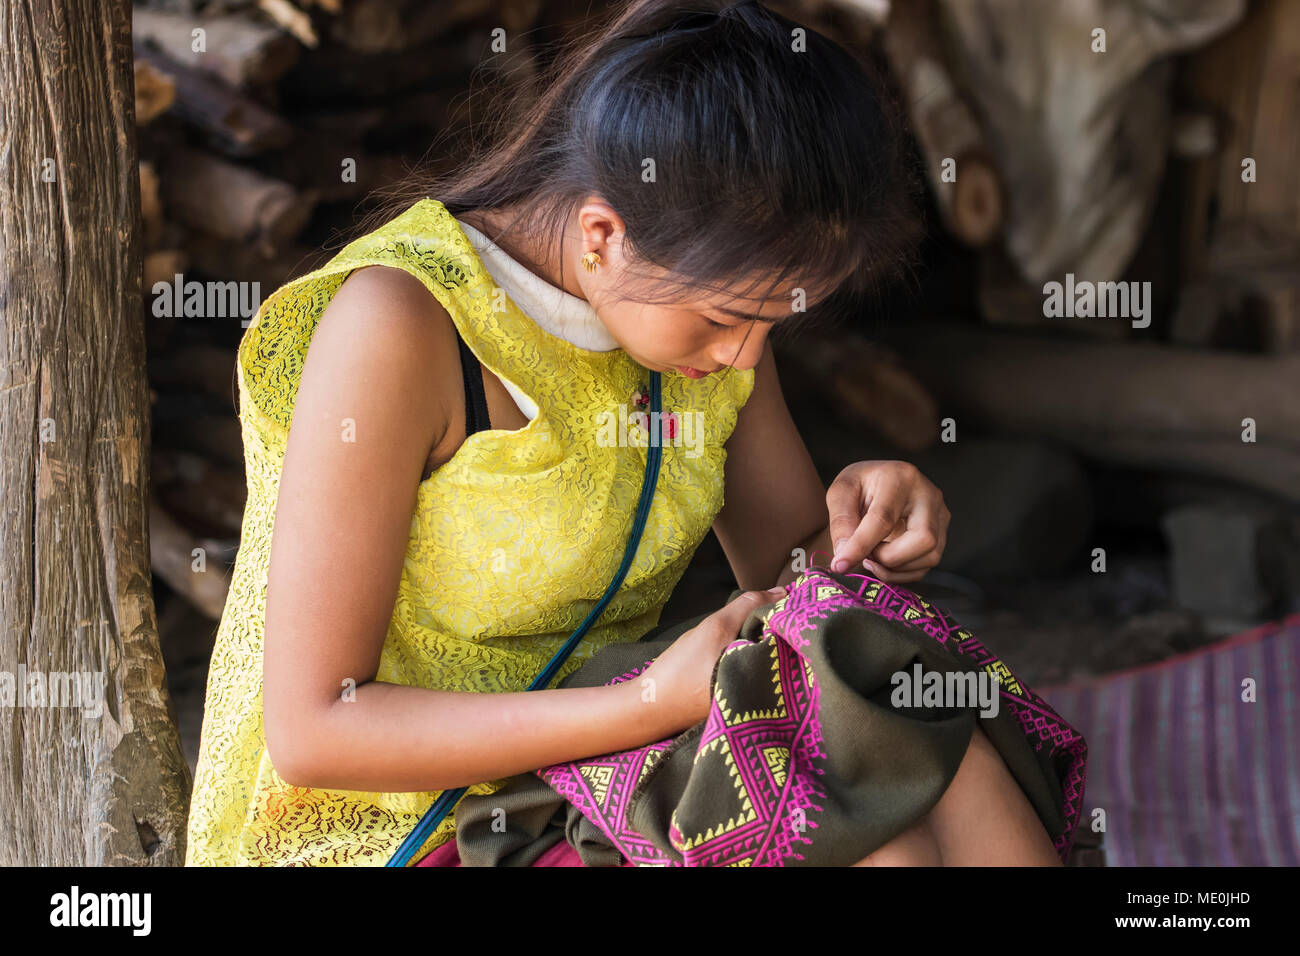 Hmong woman making embroideries, Na Aouan Village; Luang Prabang, Laos Stock Photo